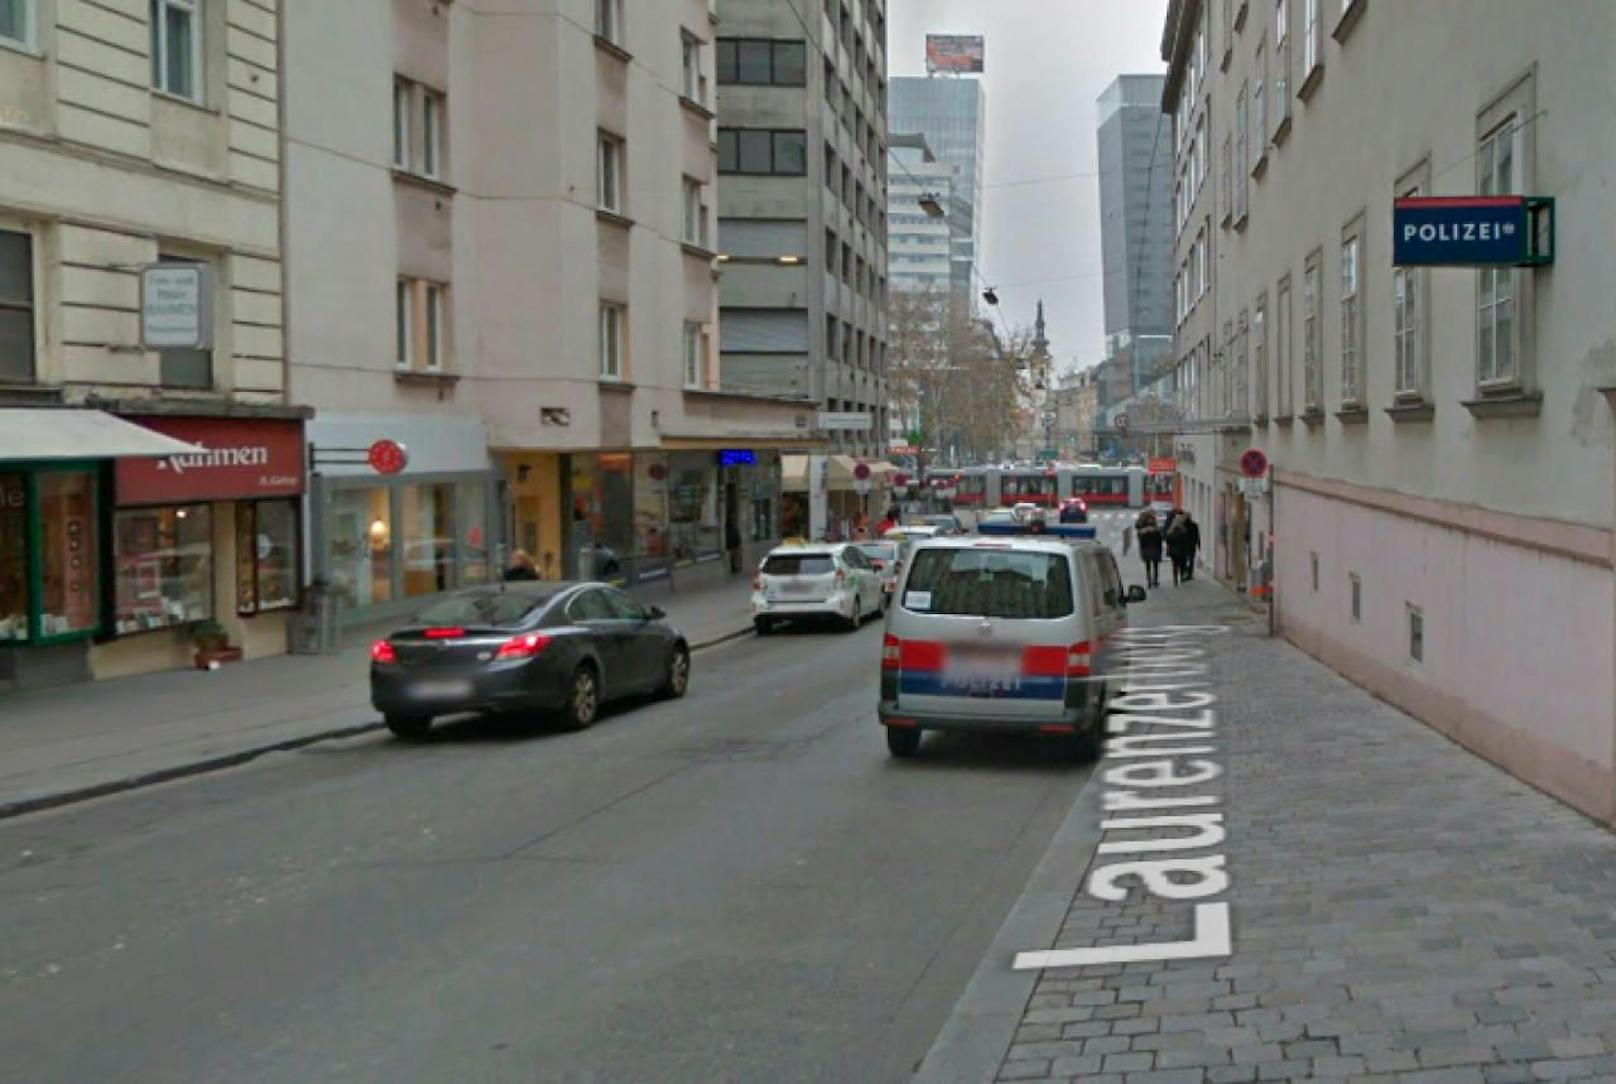 Die Polizeiinspektion Laurenzerberg liegt unweit des Schwedenplatzes in der Wiener Innenstadt.